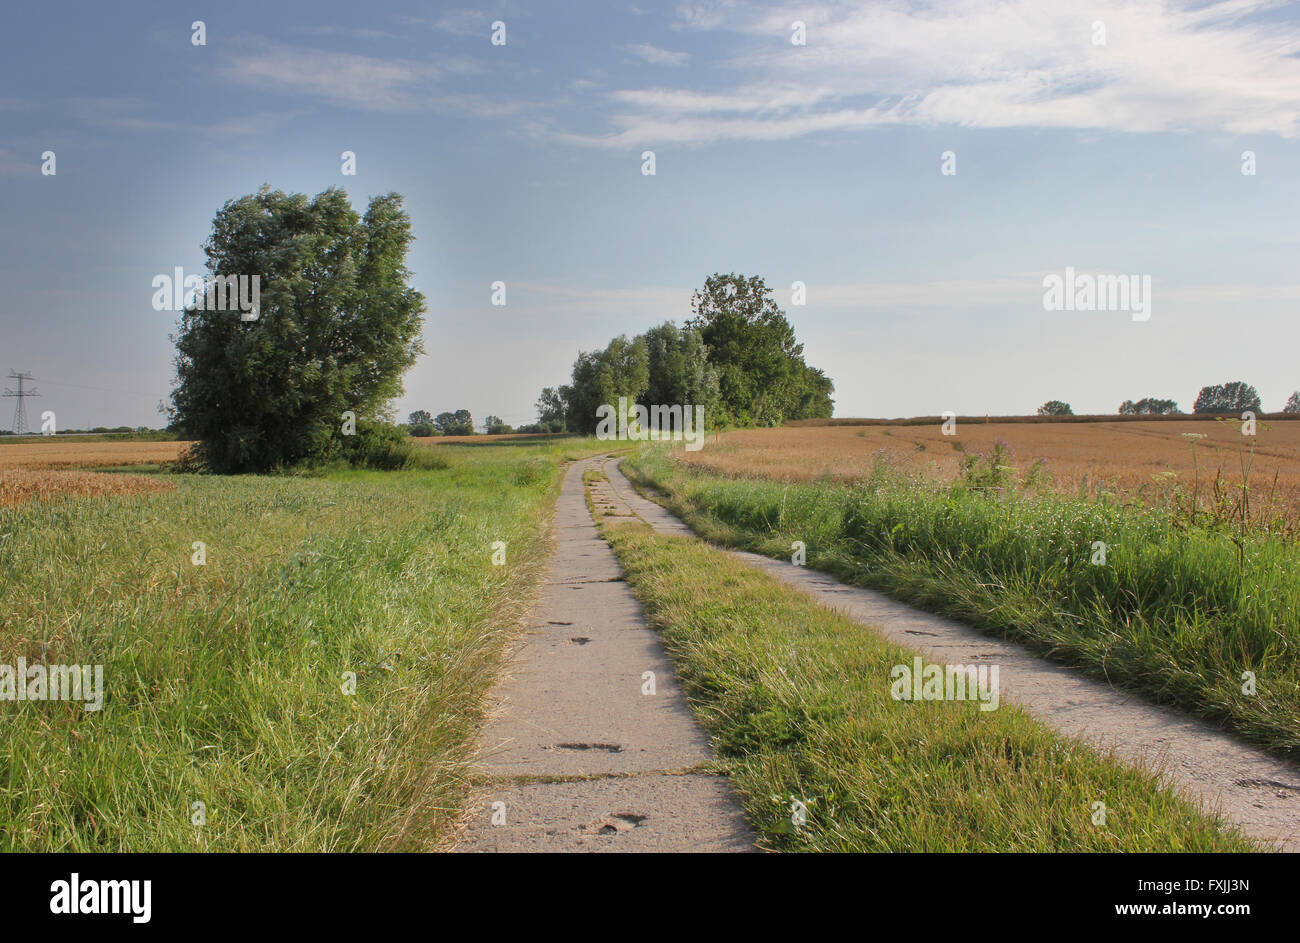 Ein Blick auf eine Landstraße in Mecklenburg-Vorpommern, Deutschland. Bild entstand mit einem HDR imaging Technik. Stockfoto